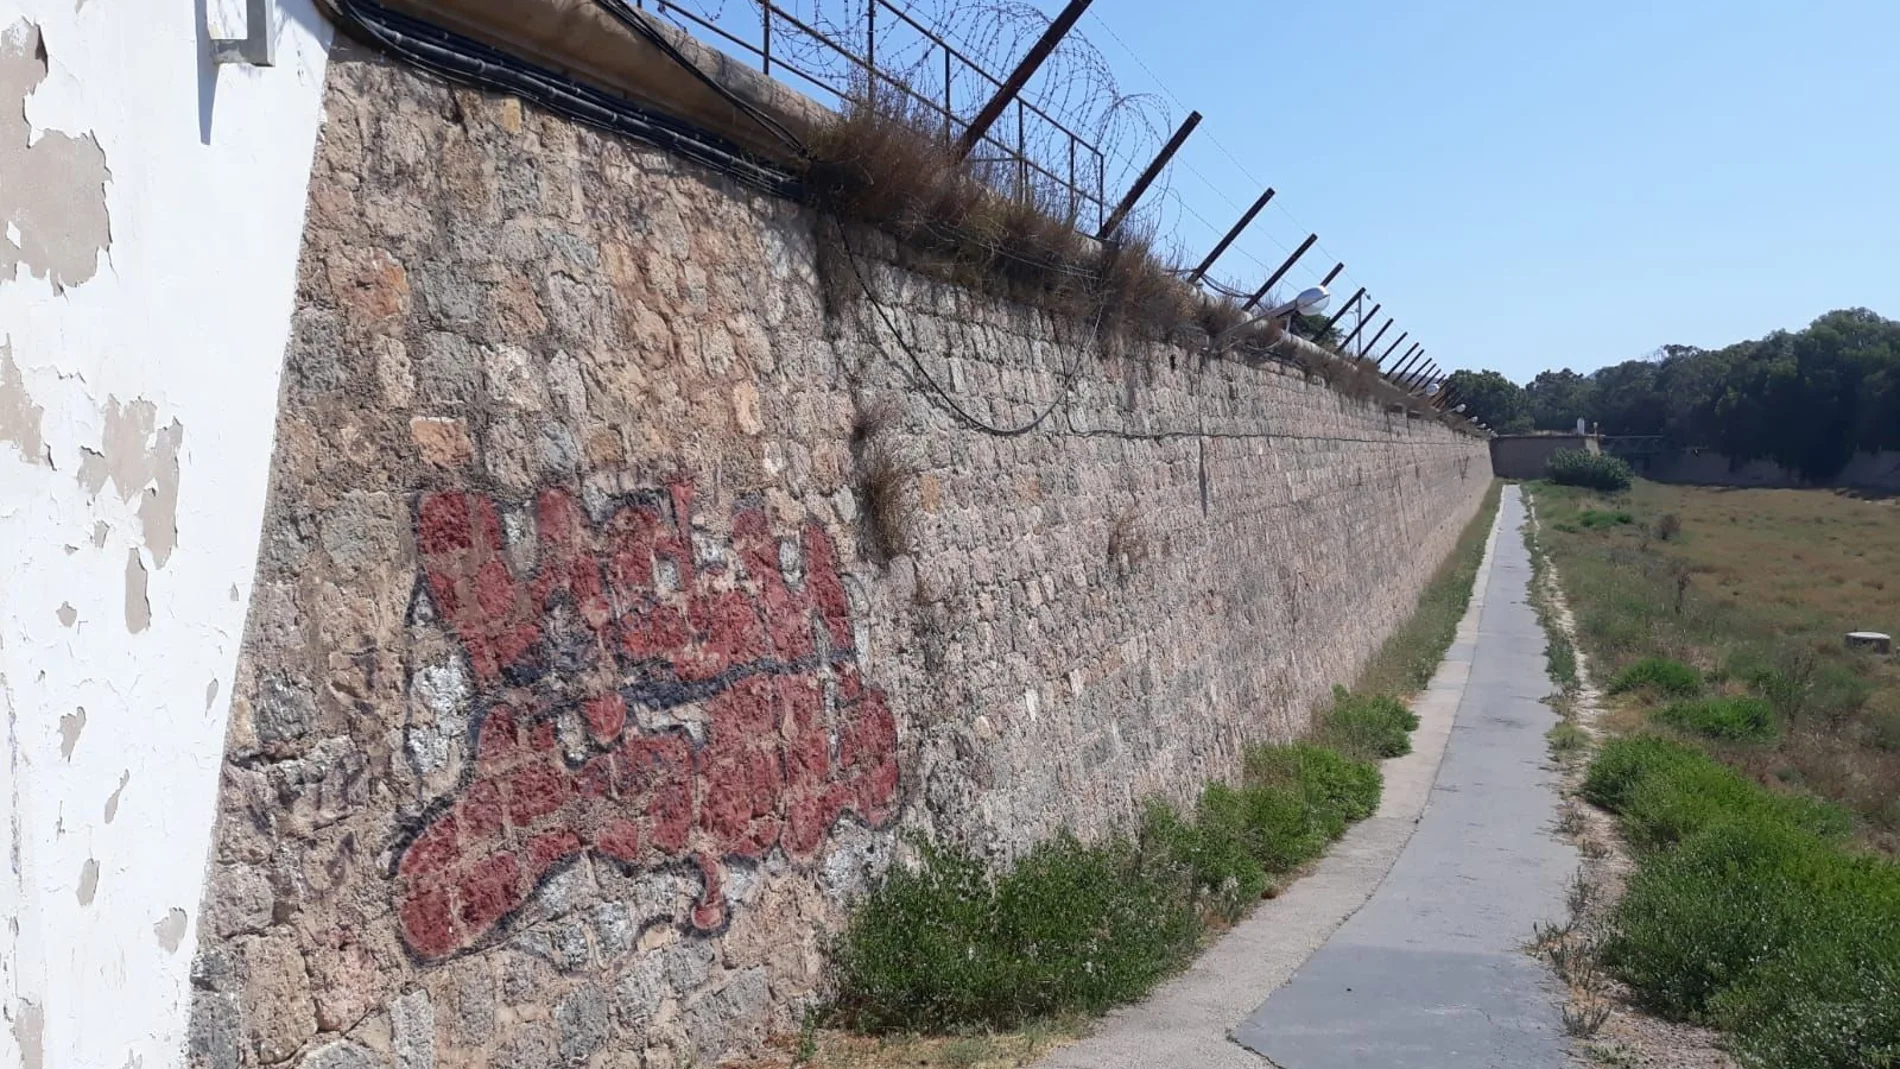 El deterioro de la Muralla es grave y actualmente no se realiza ninguna tarea de conservación